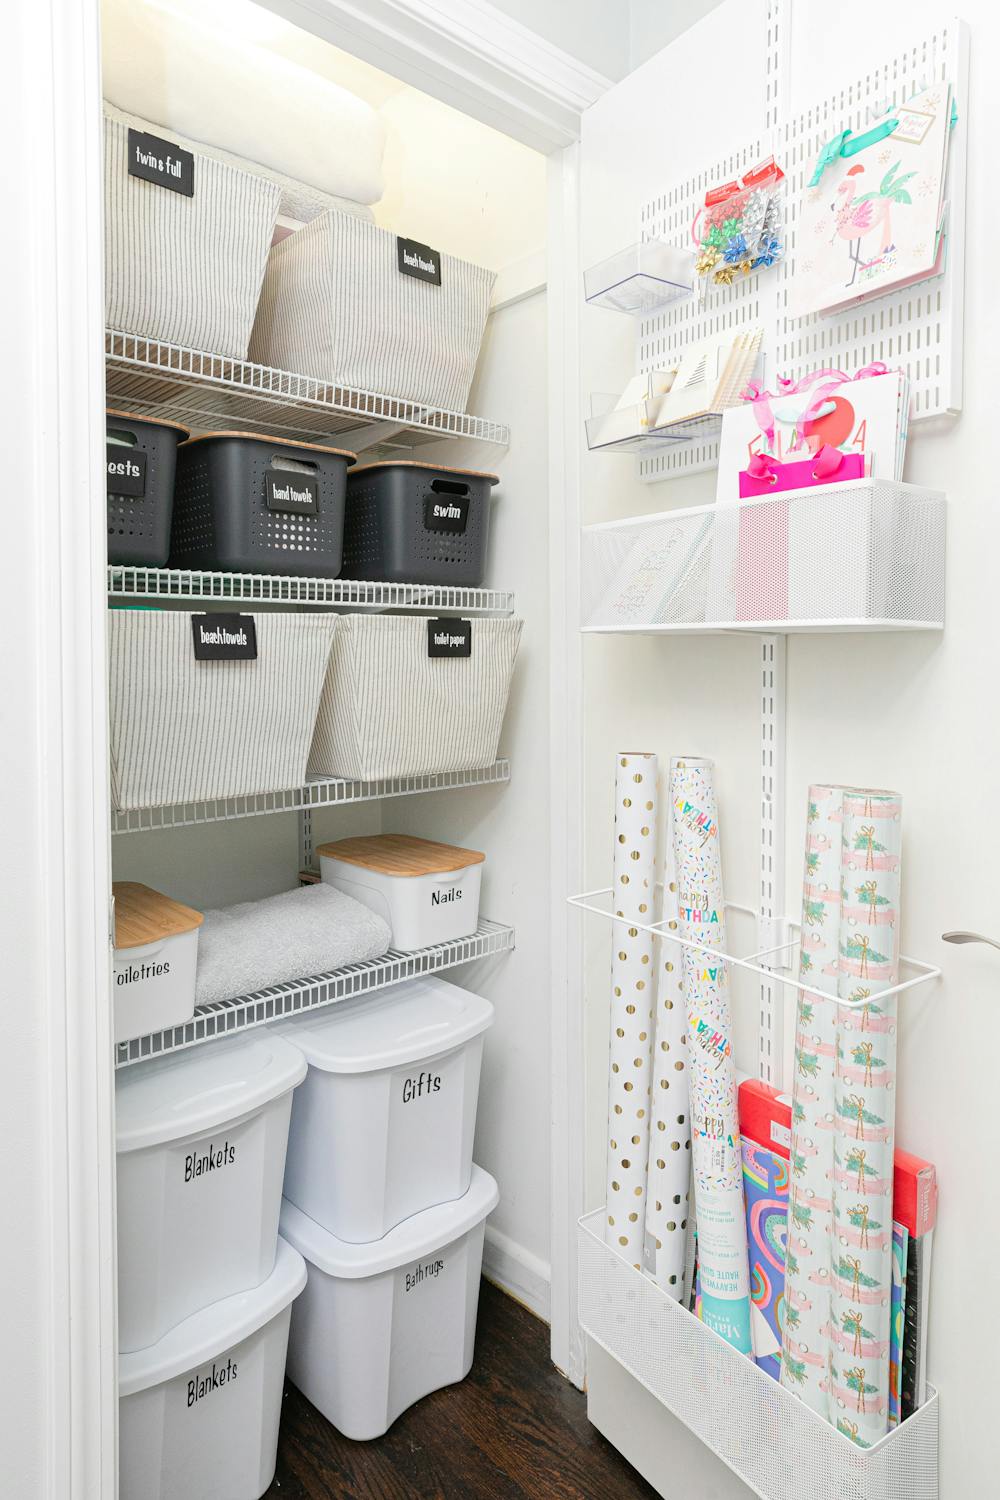 Organized Gift Wrap Shelf & Drawers - Simply Organized